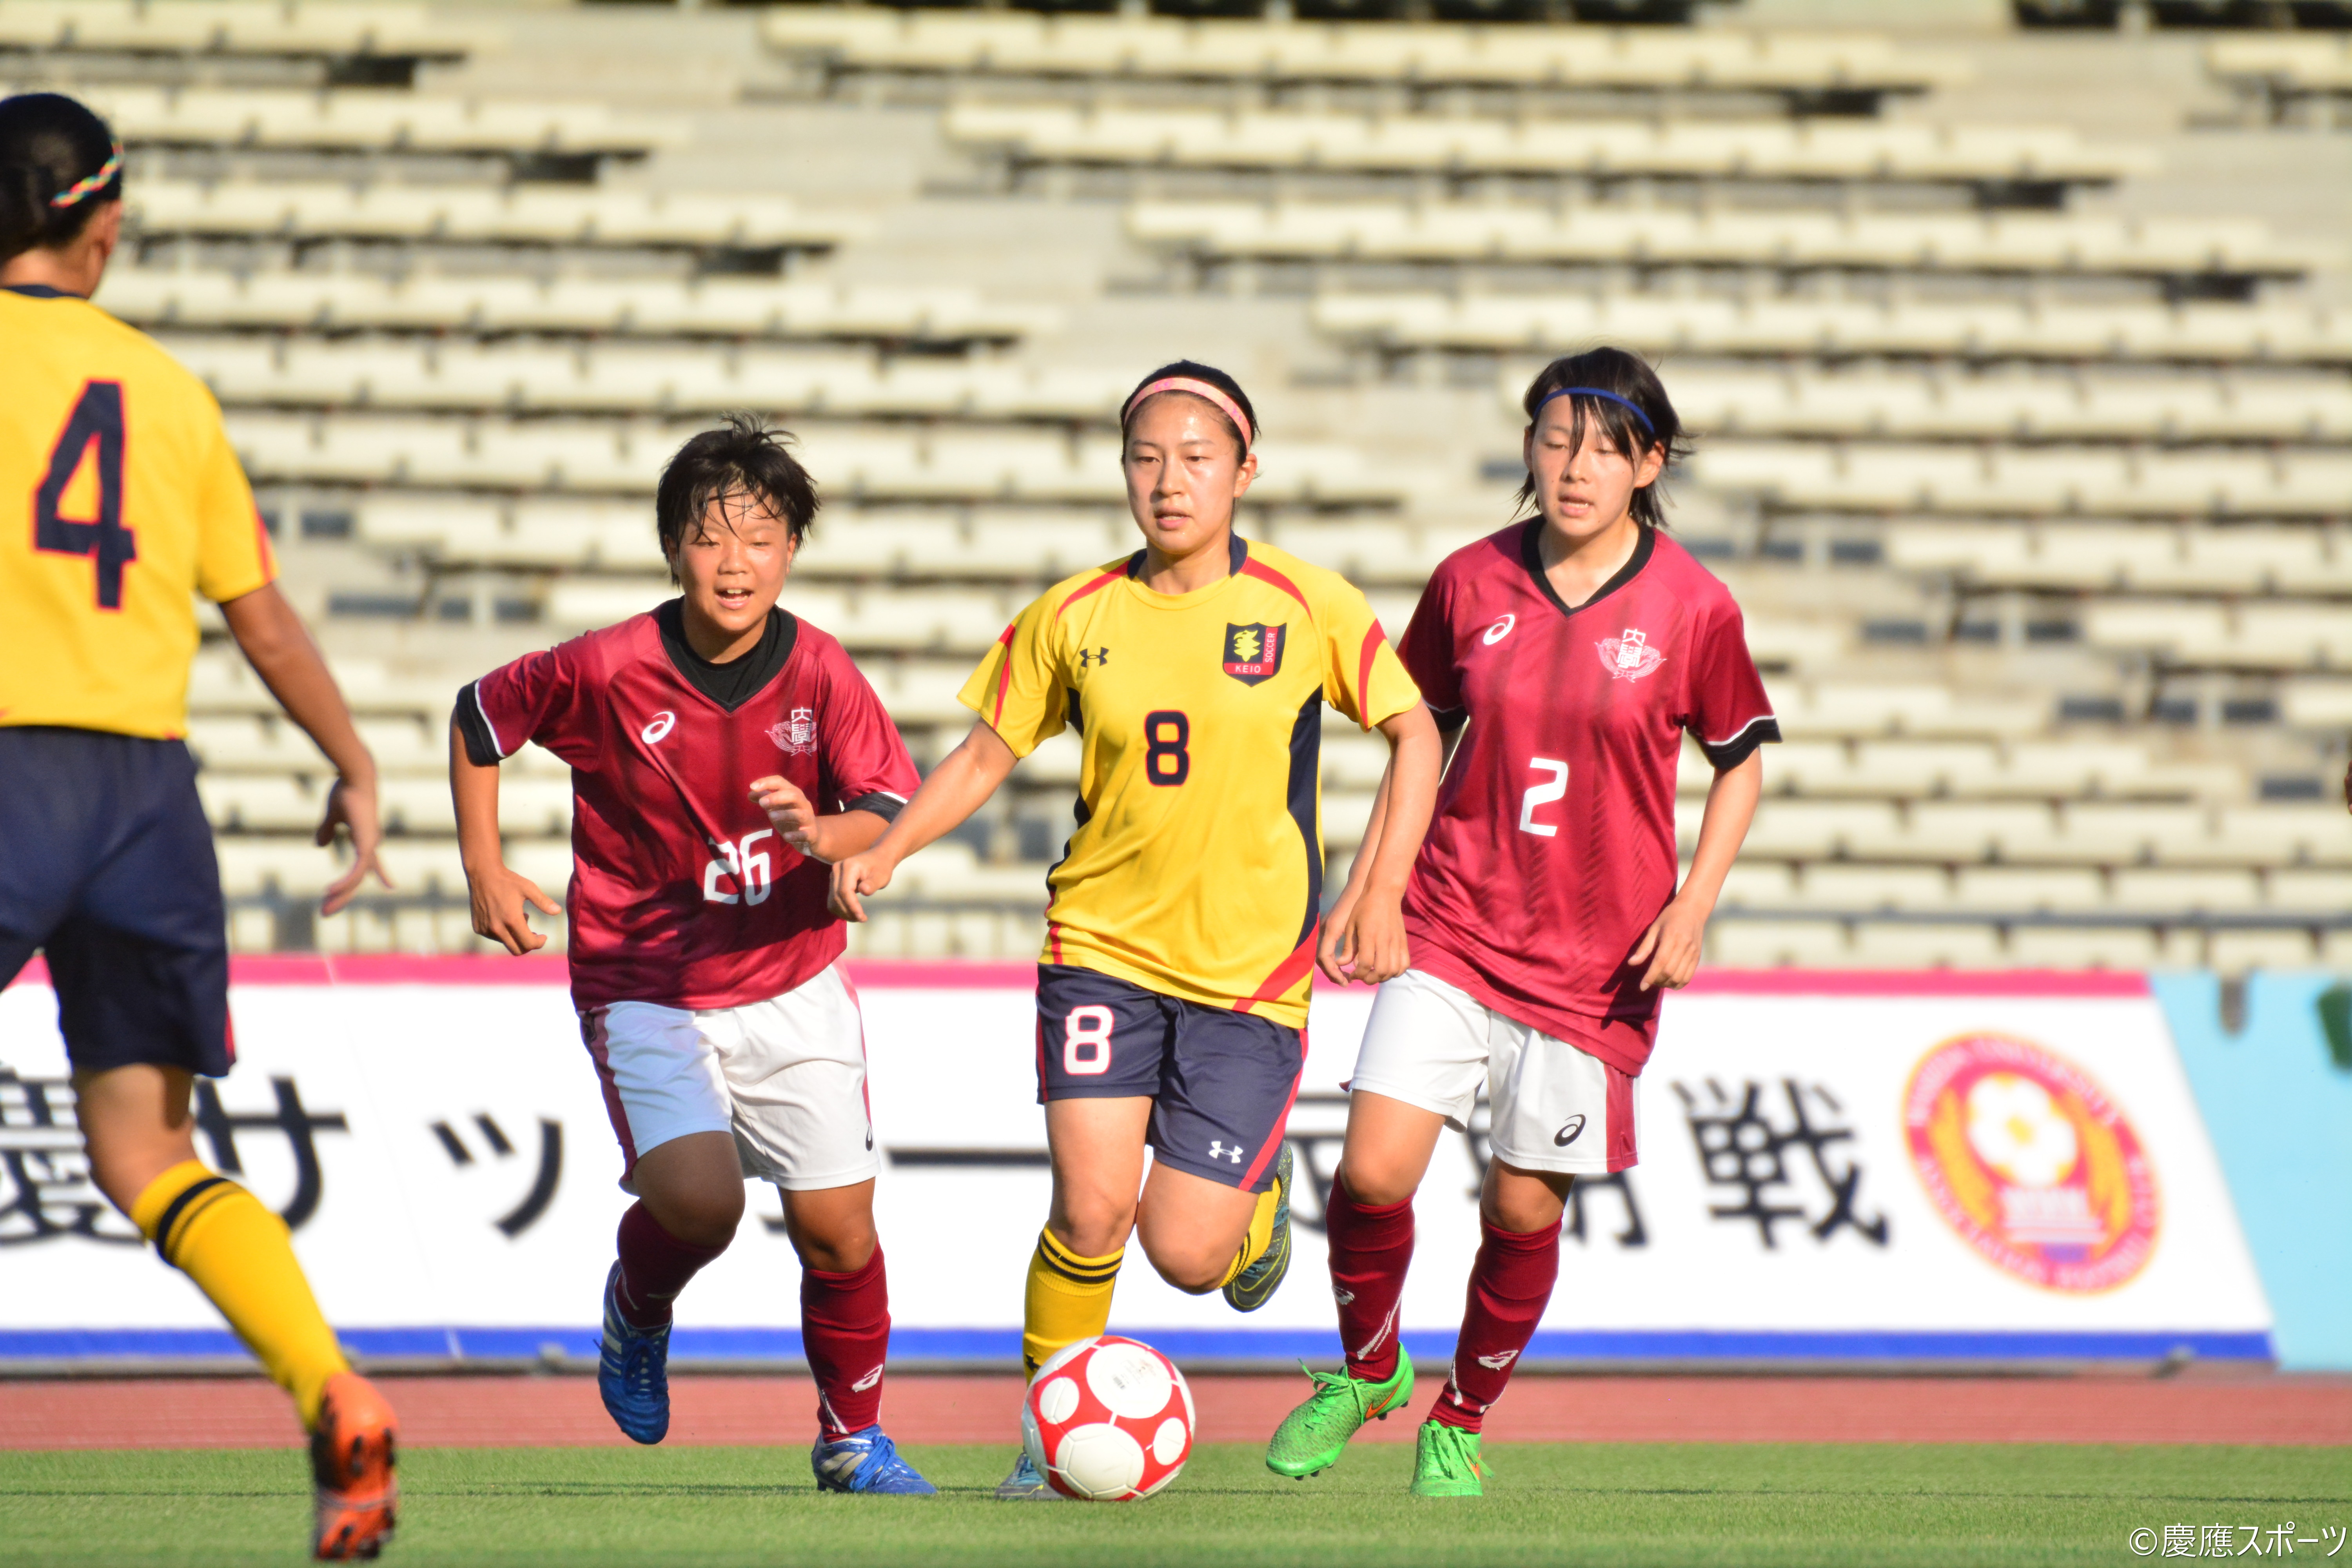 ソッカー女子 大きな収穫 敗戦するも溢れたゴールへの意欲 第15回早慶女子サッカー定期戦 Keio Sports Press